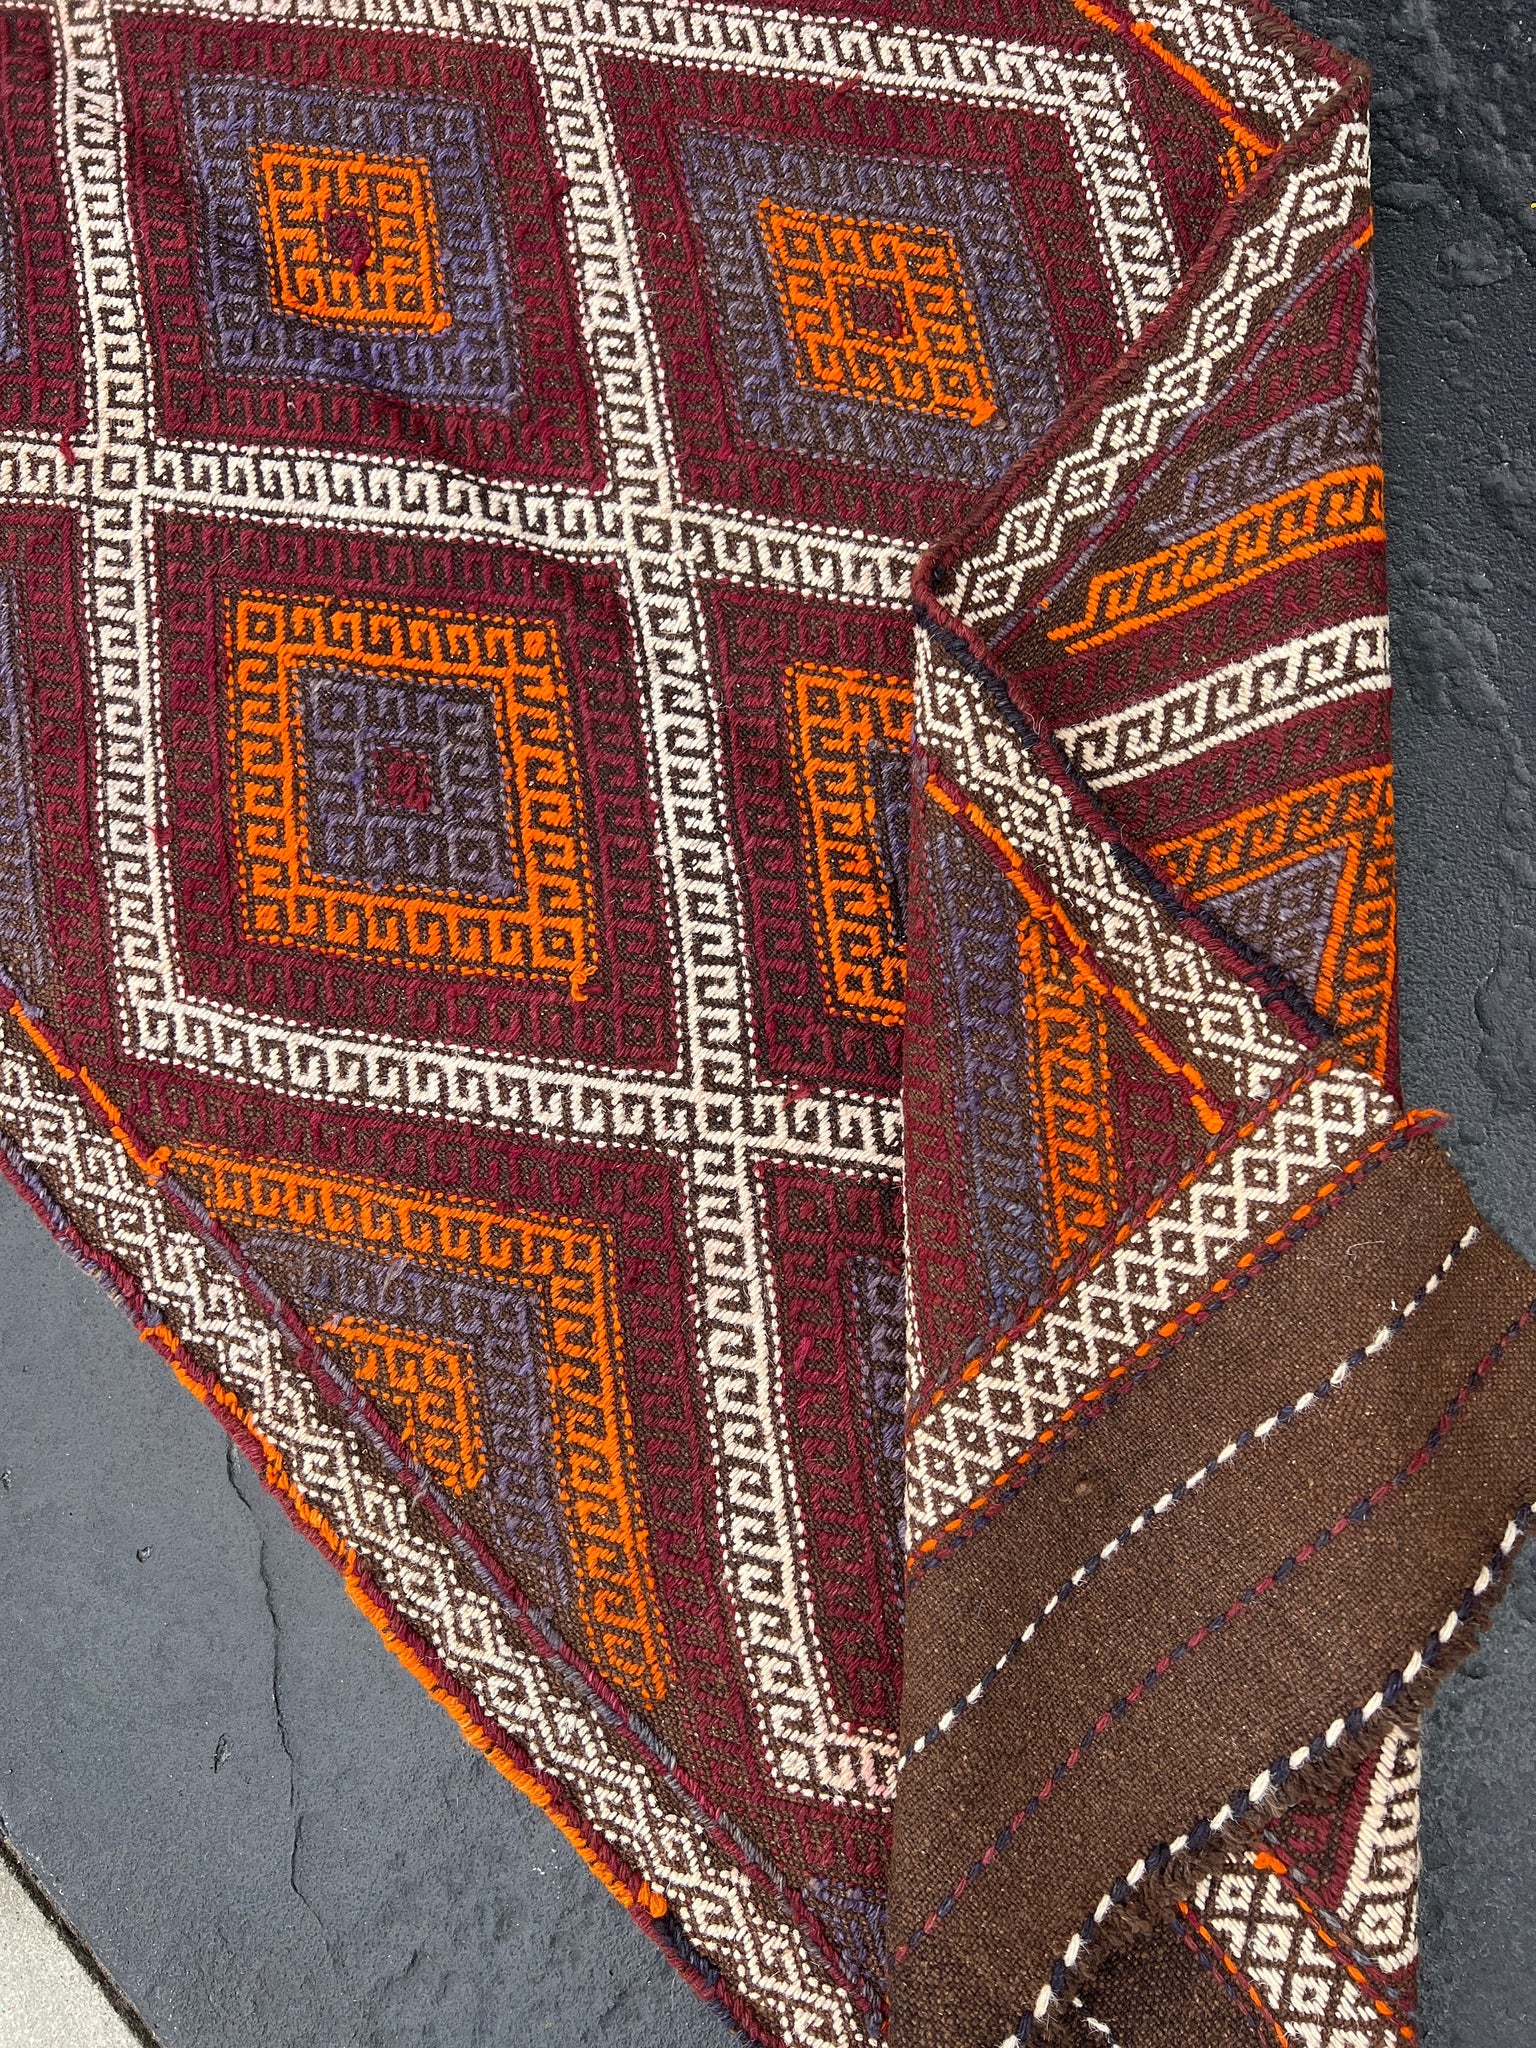 3x9 (90x275) Handmade Afghan Kilim Runner Rug | Chocolate Brown Maroon Garnet Red Ivory Orange Navy Midnight Blue | Persian Flatweave Wool